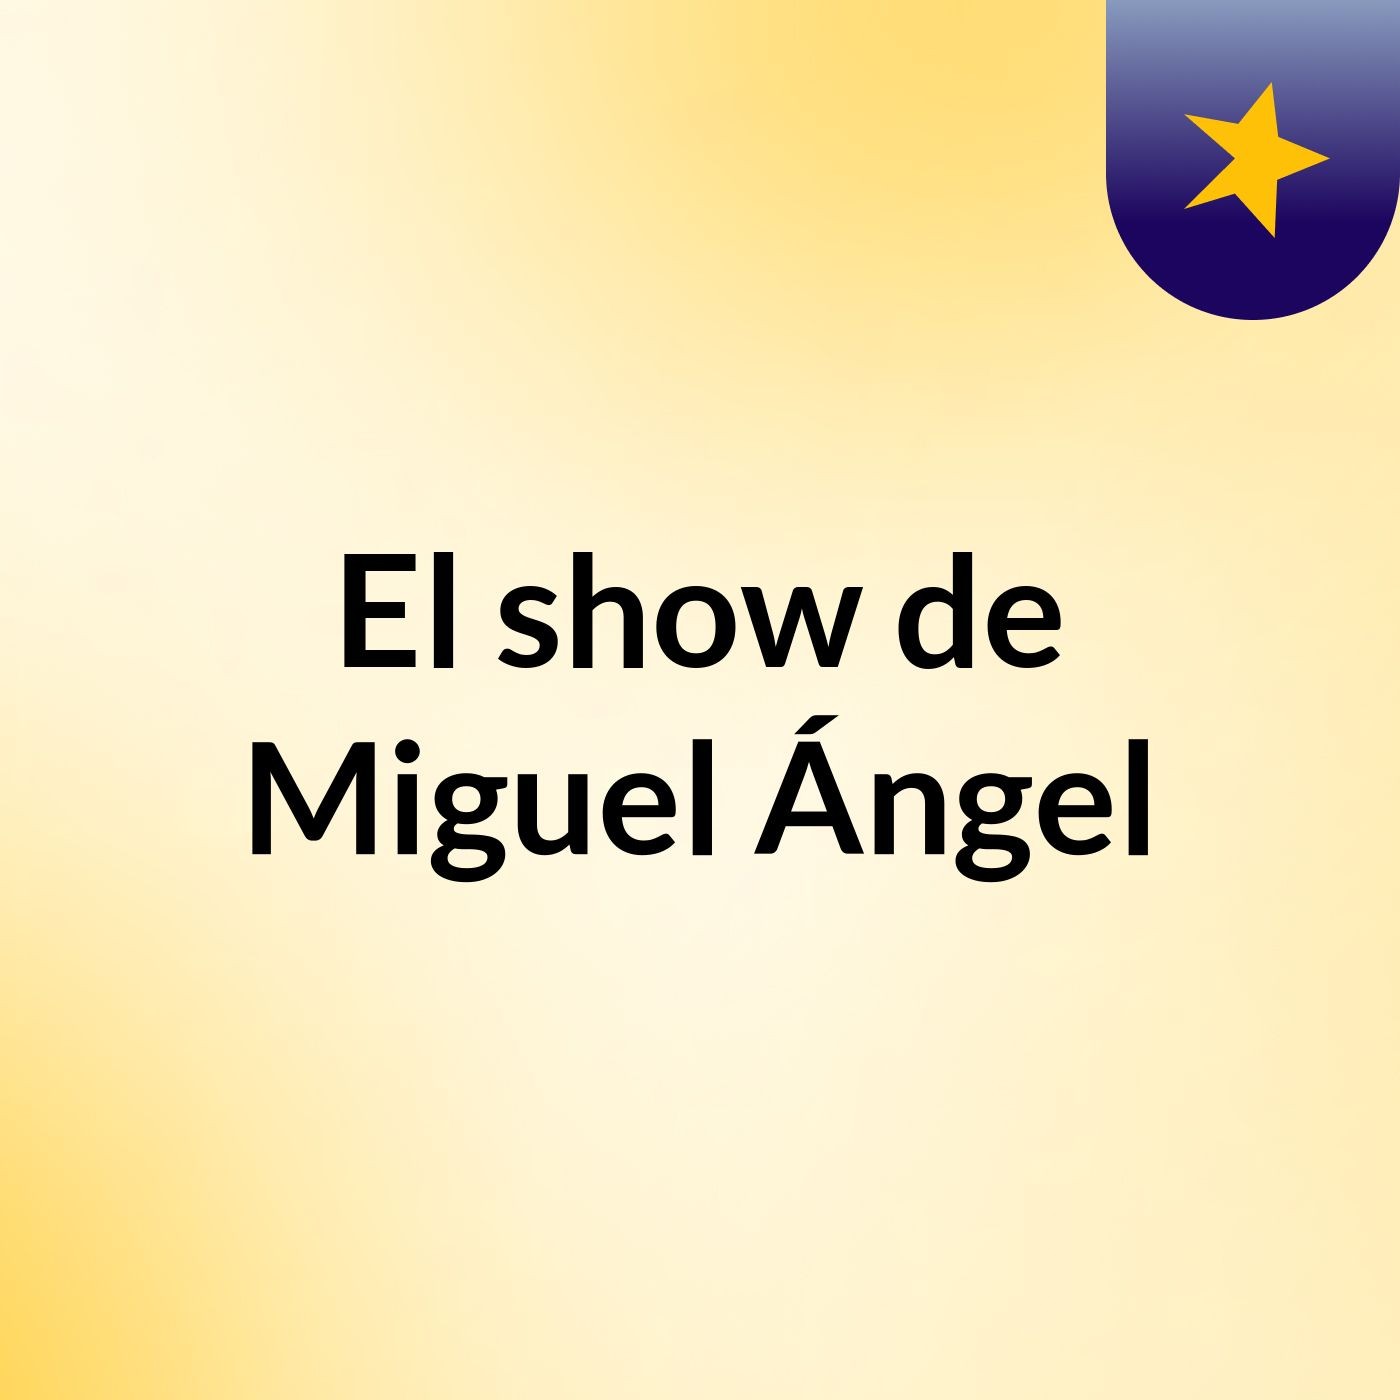 El show de Miguel Ángel